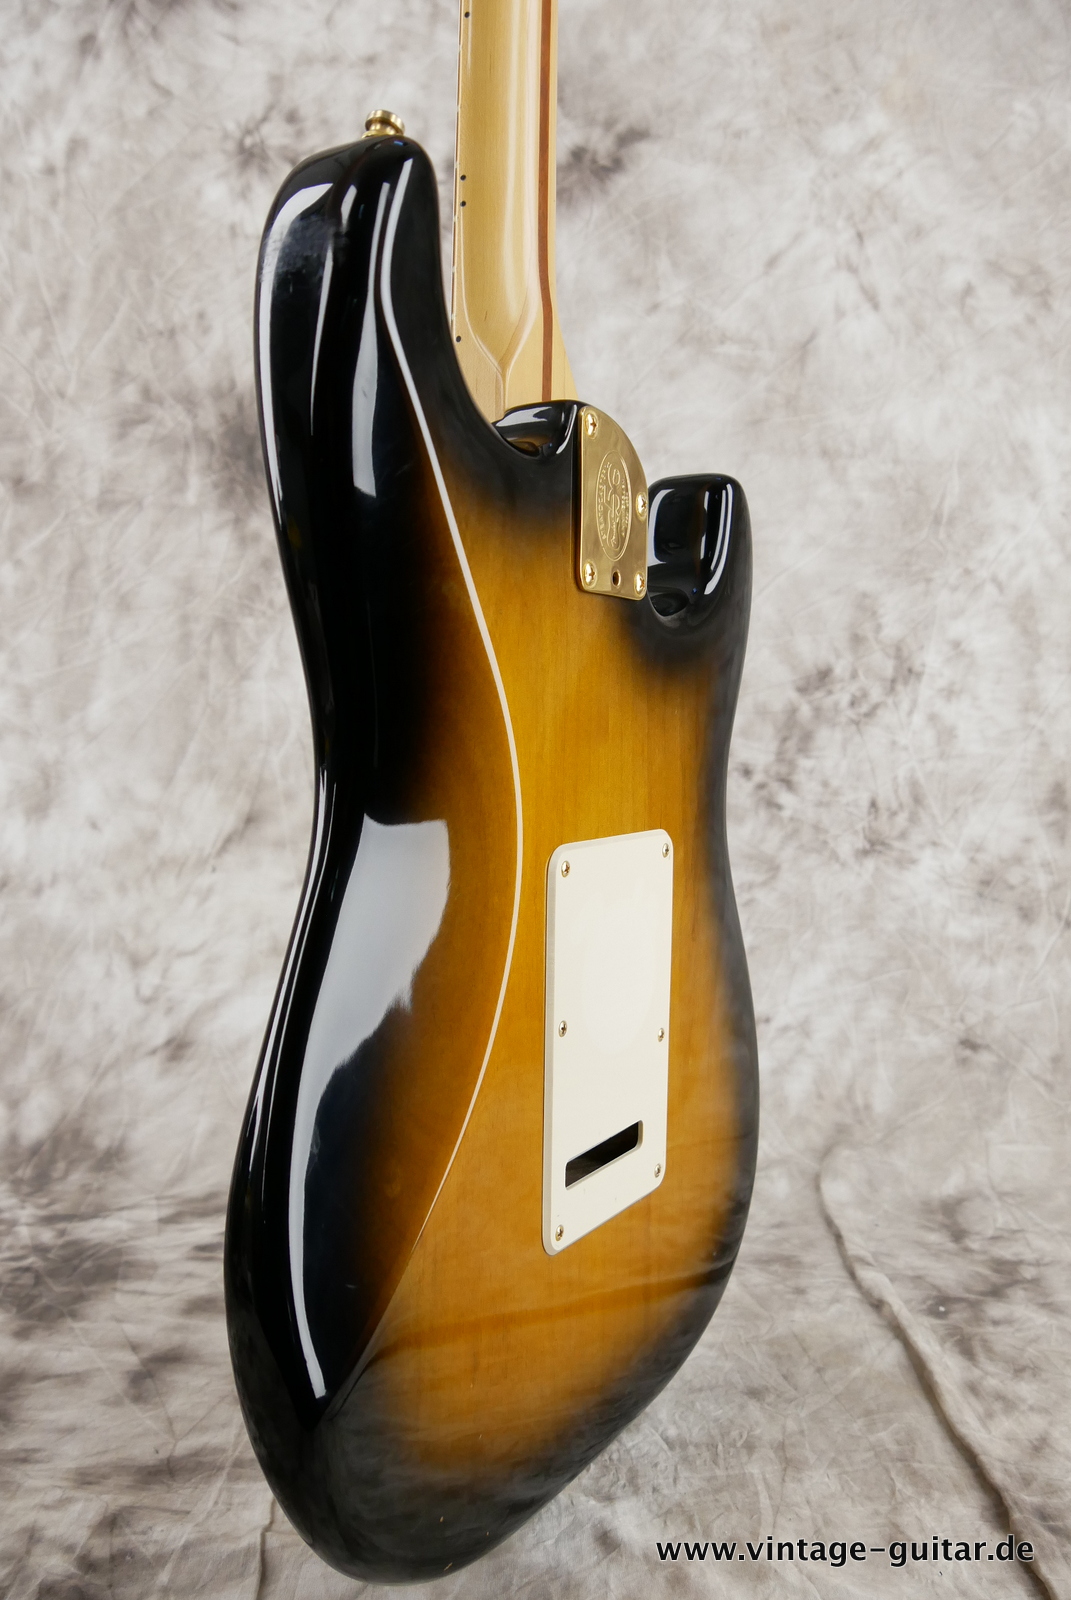 Fender_Stratocaster_deluxe_50th_anniversary__left_hand_sunburst_tweed_case_2004-011.JPG